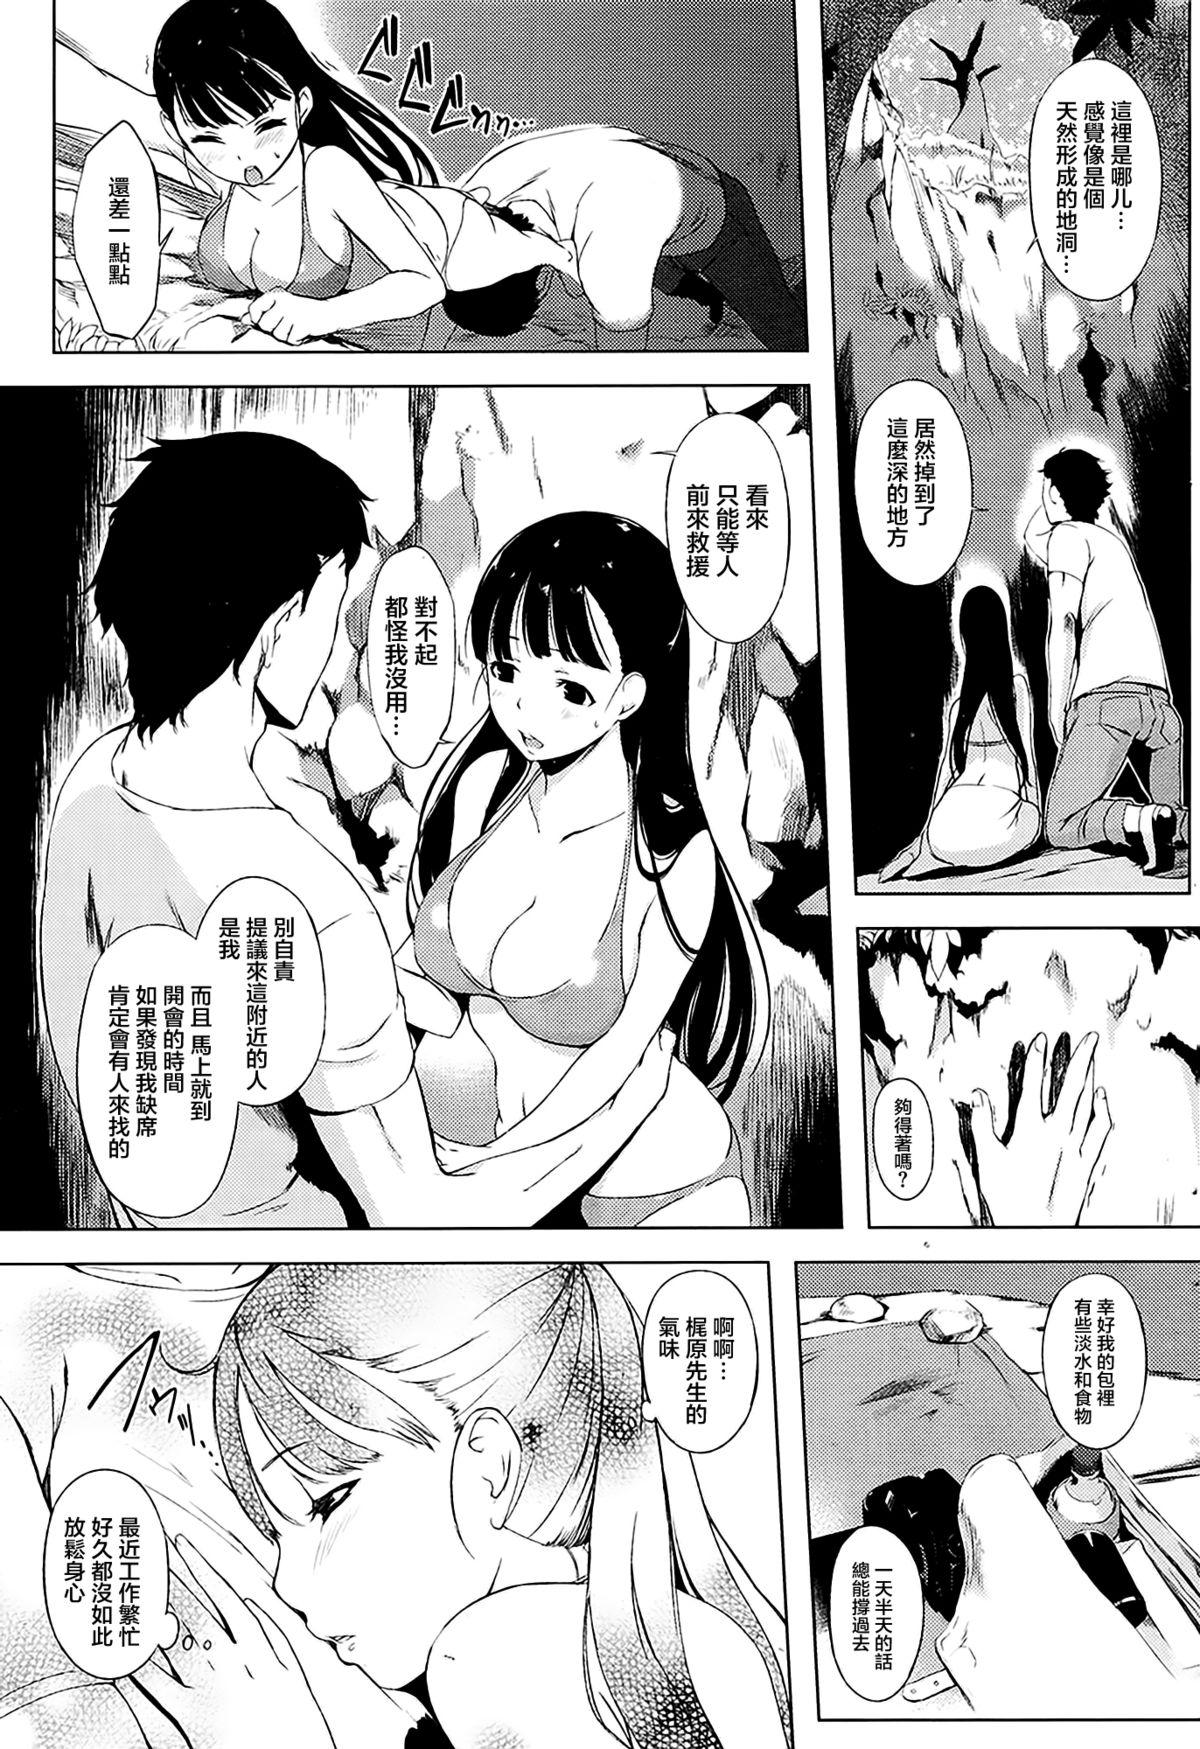 Dildo Giwaku to miwaku & Futari no omocha Sapphic Erotica - Page 8